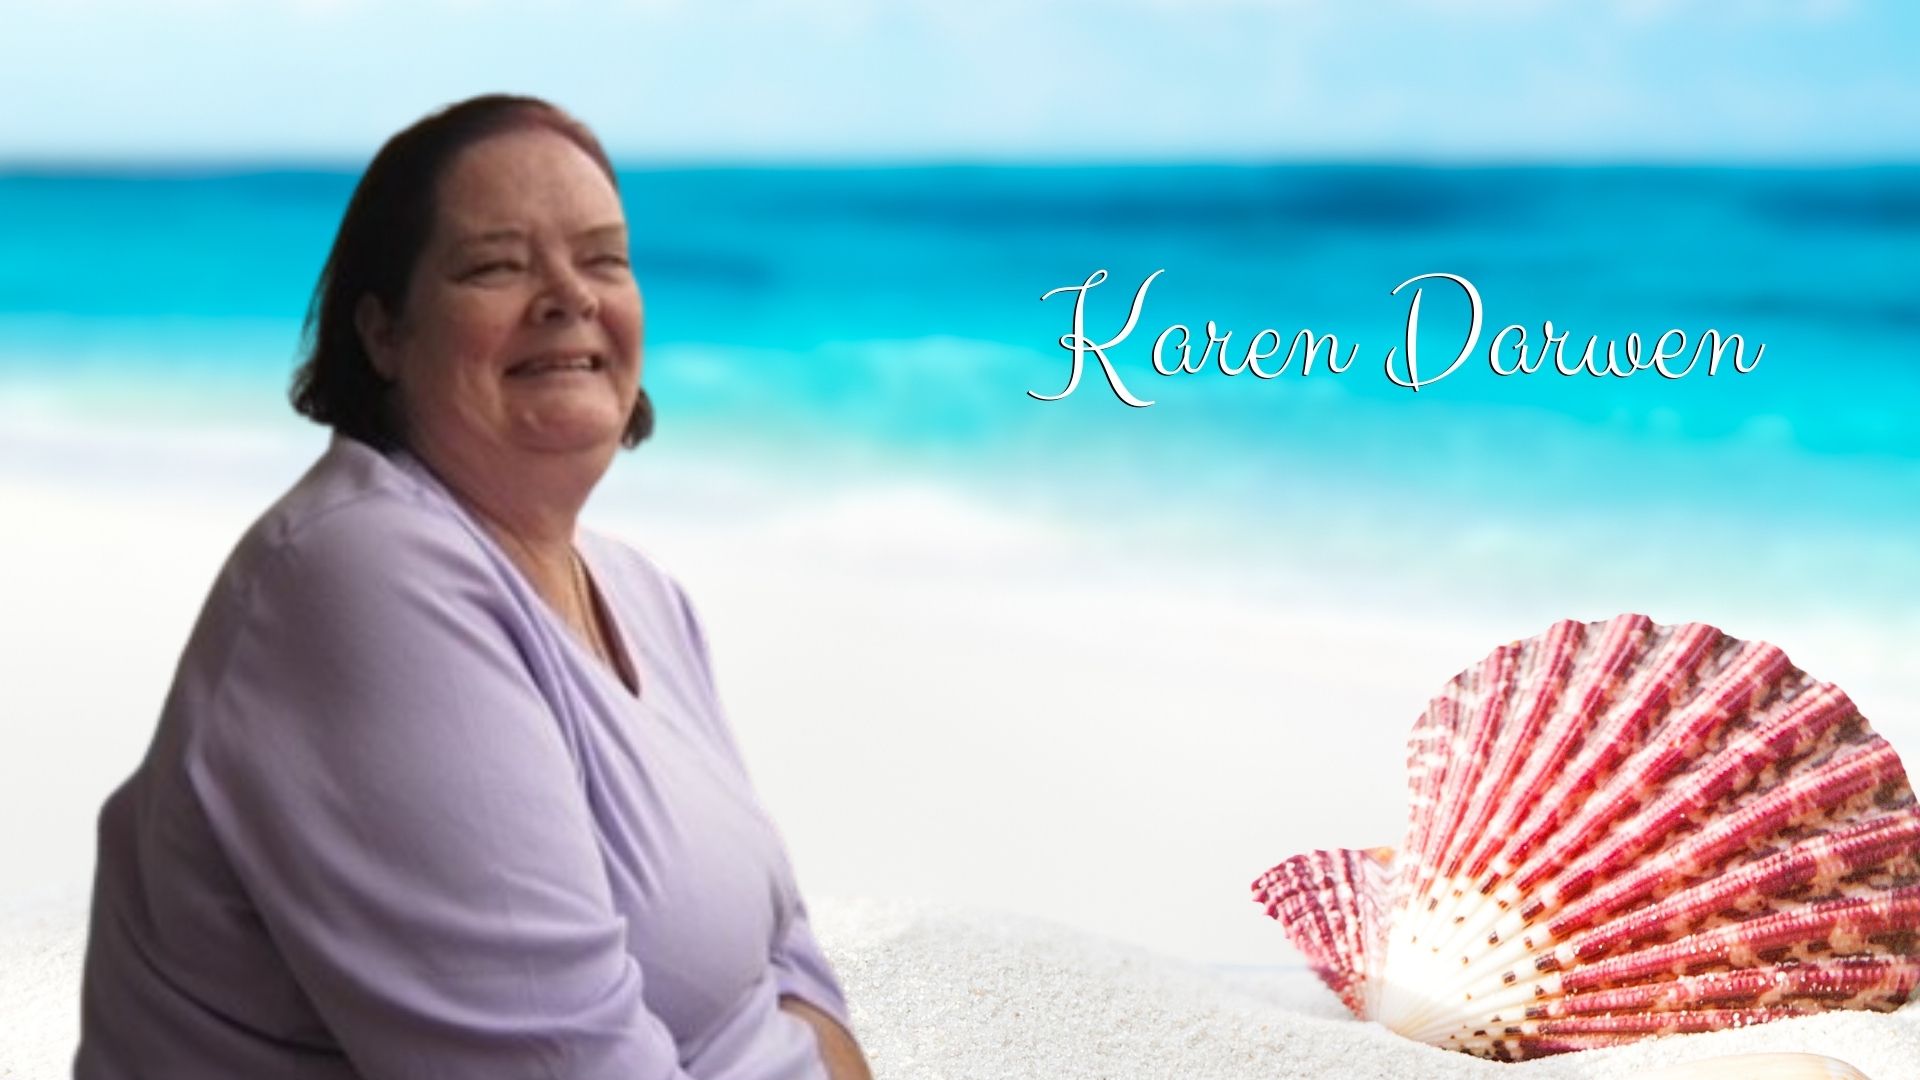 Karen Darwen